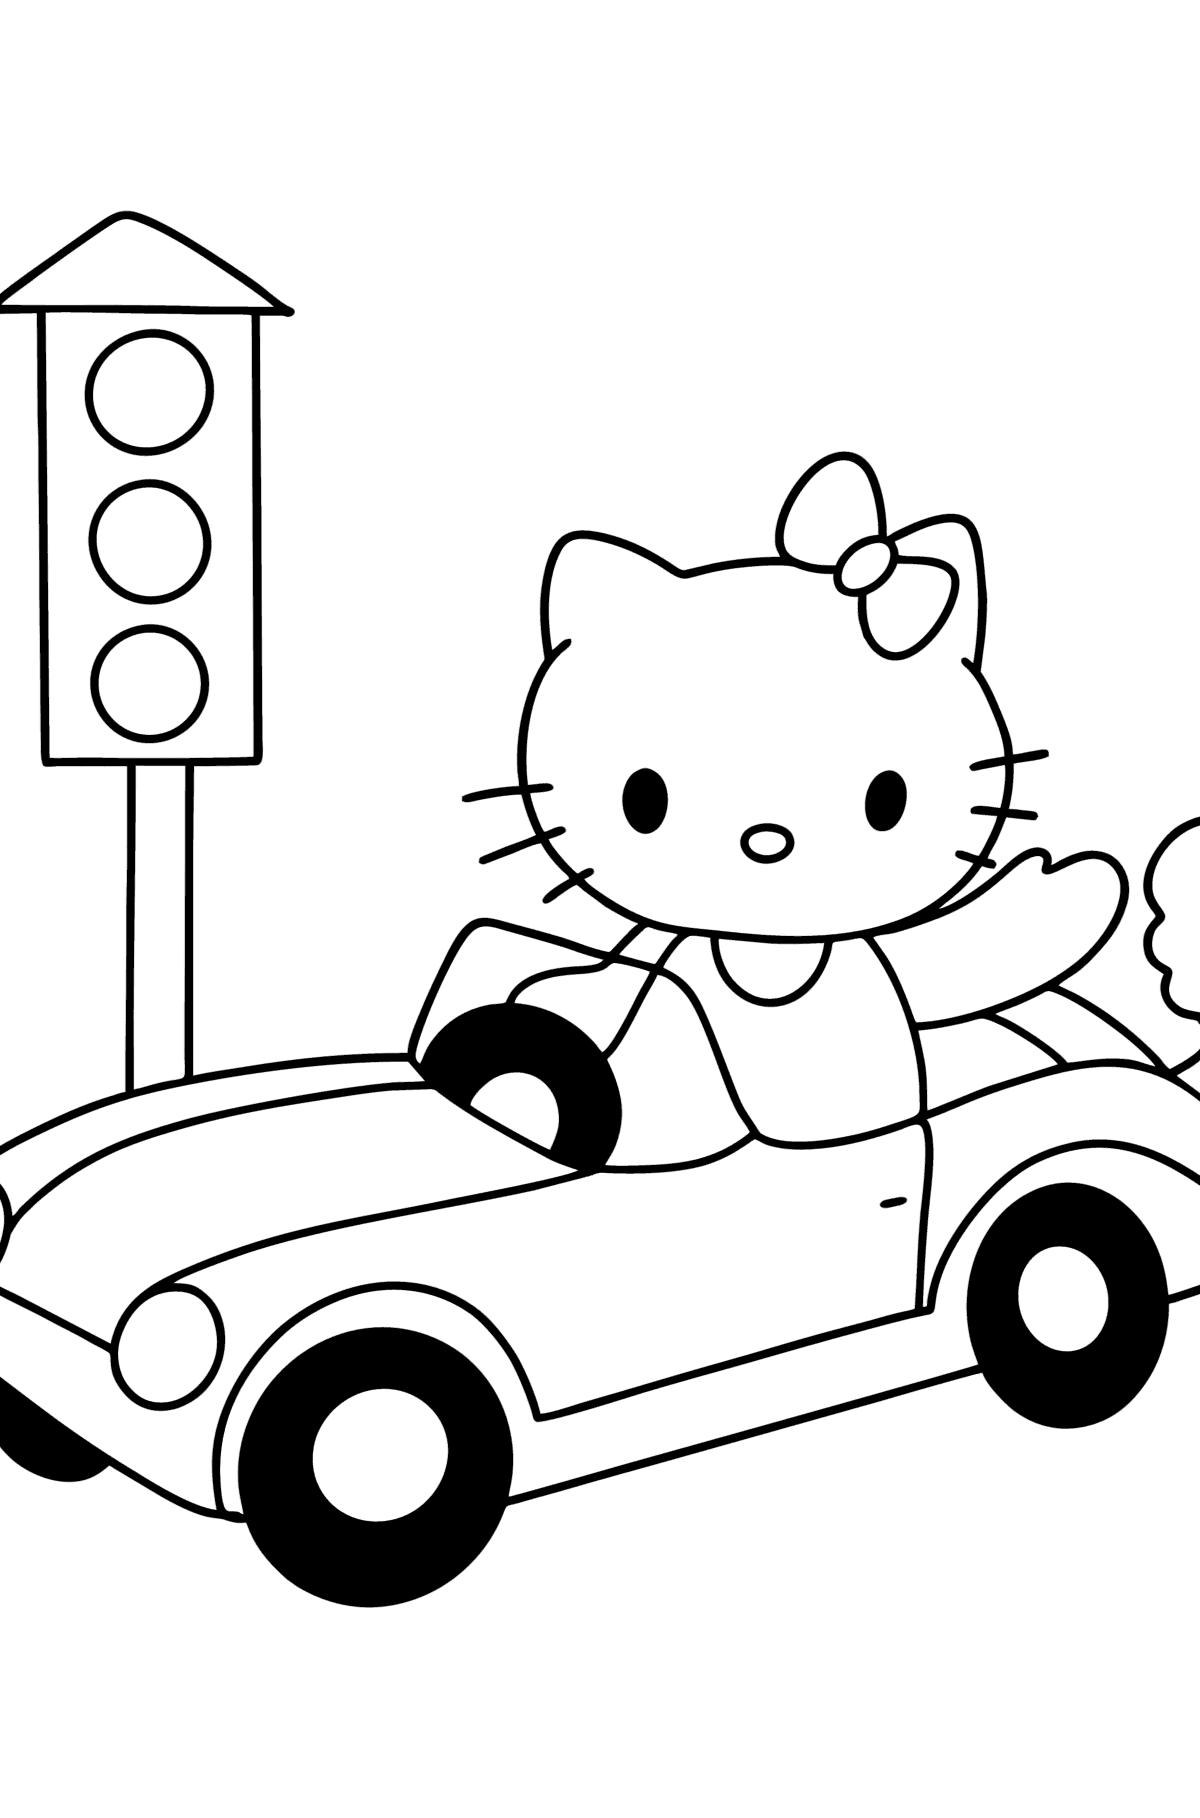 Dibujo de Hello Kitty en coche para colorear - Dibujos para Colorear para Niños